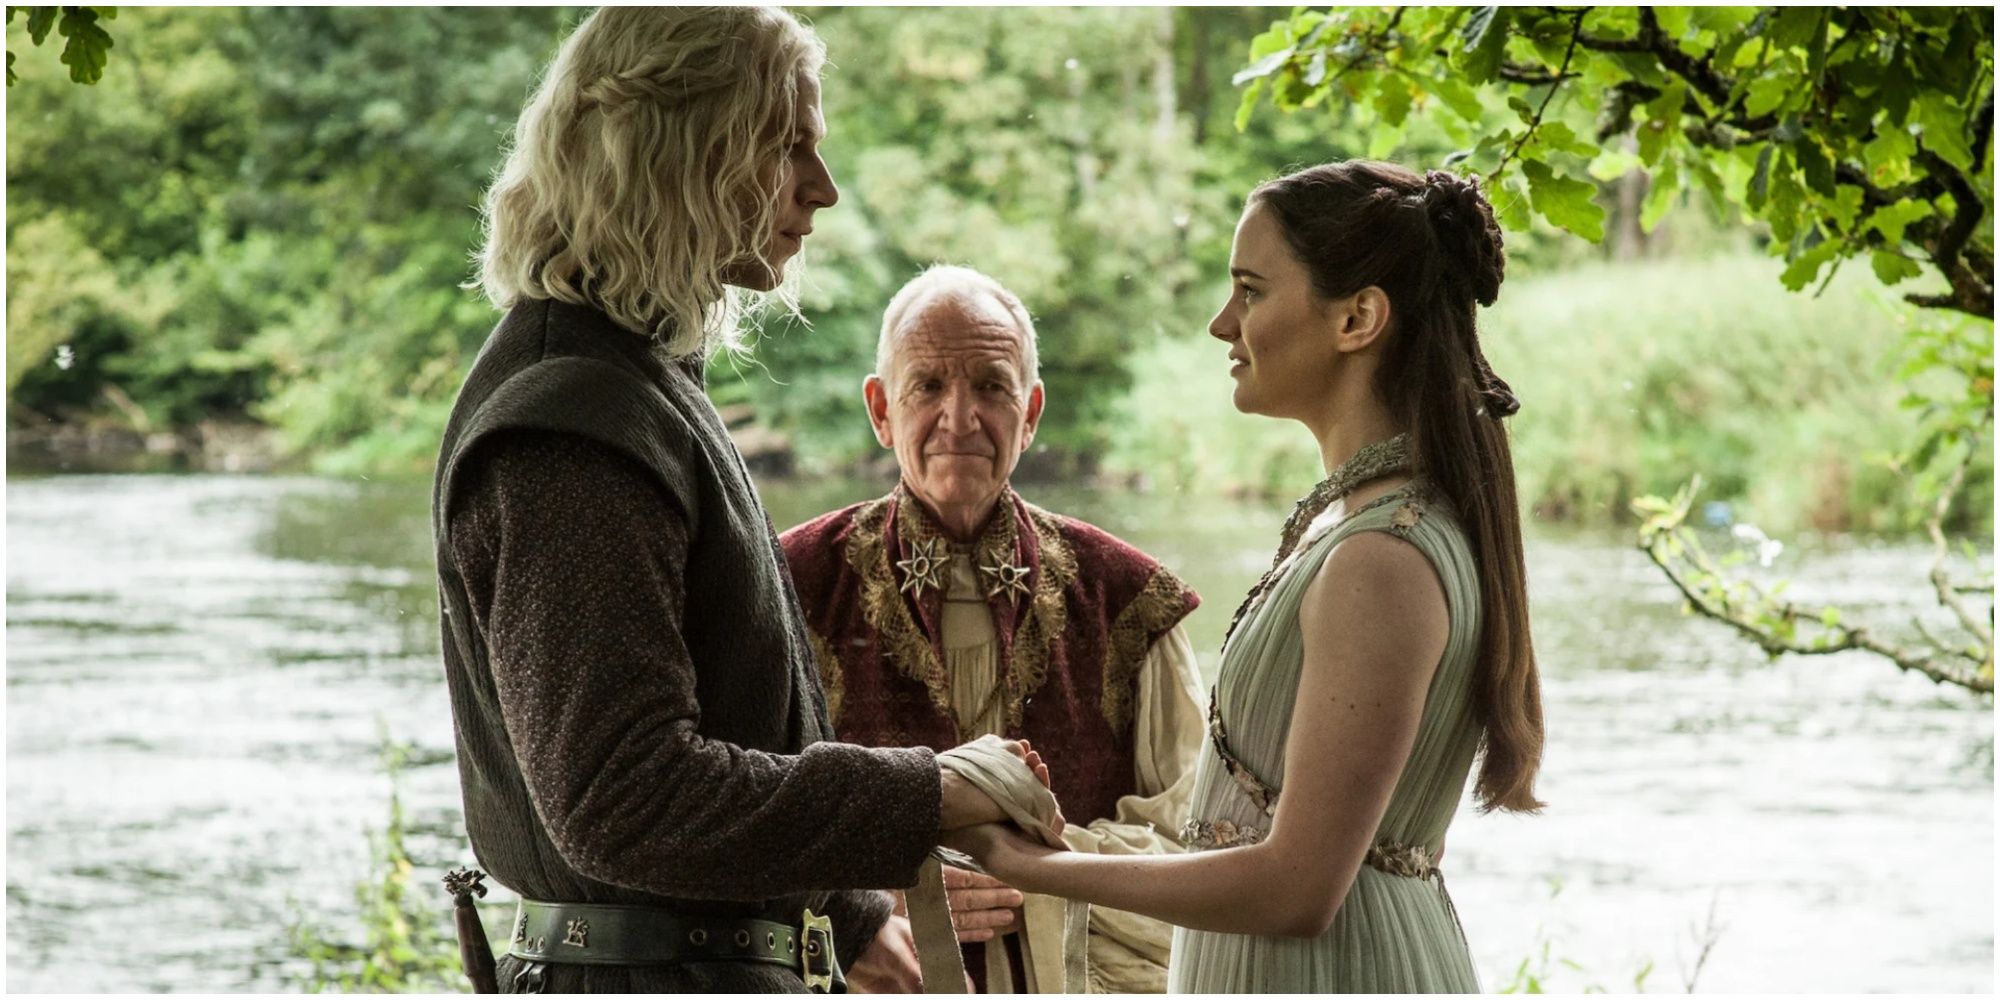 Cérémonie de mariage secrète entre Rhaegar Targaryen et Lyanna Stark, célébrée par le Haut Septon dans Game of Thrones.